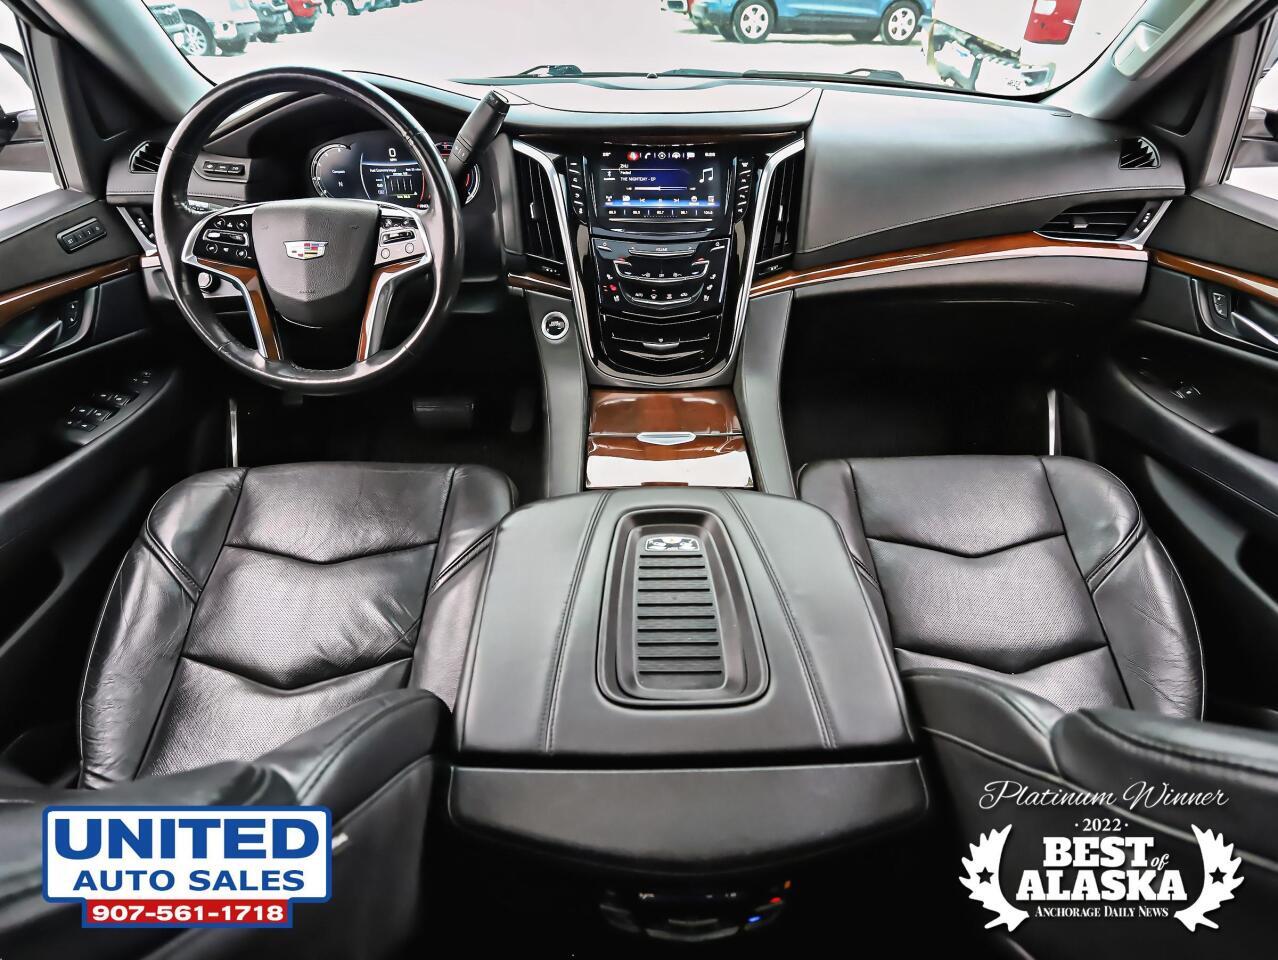 2018 Cadillac Escalade Luxury 4x4 4dr SUV 60